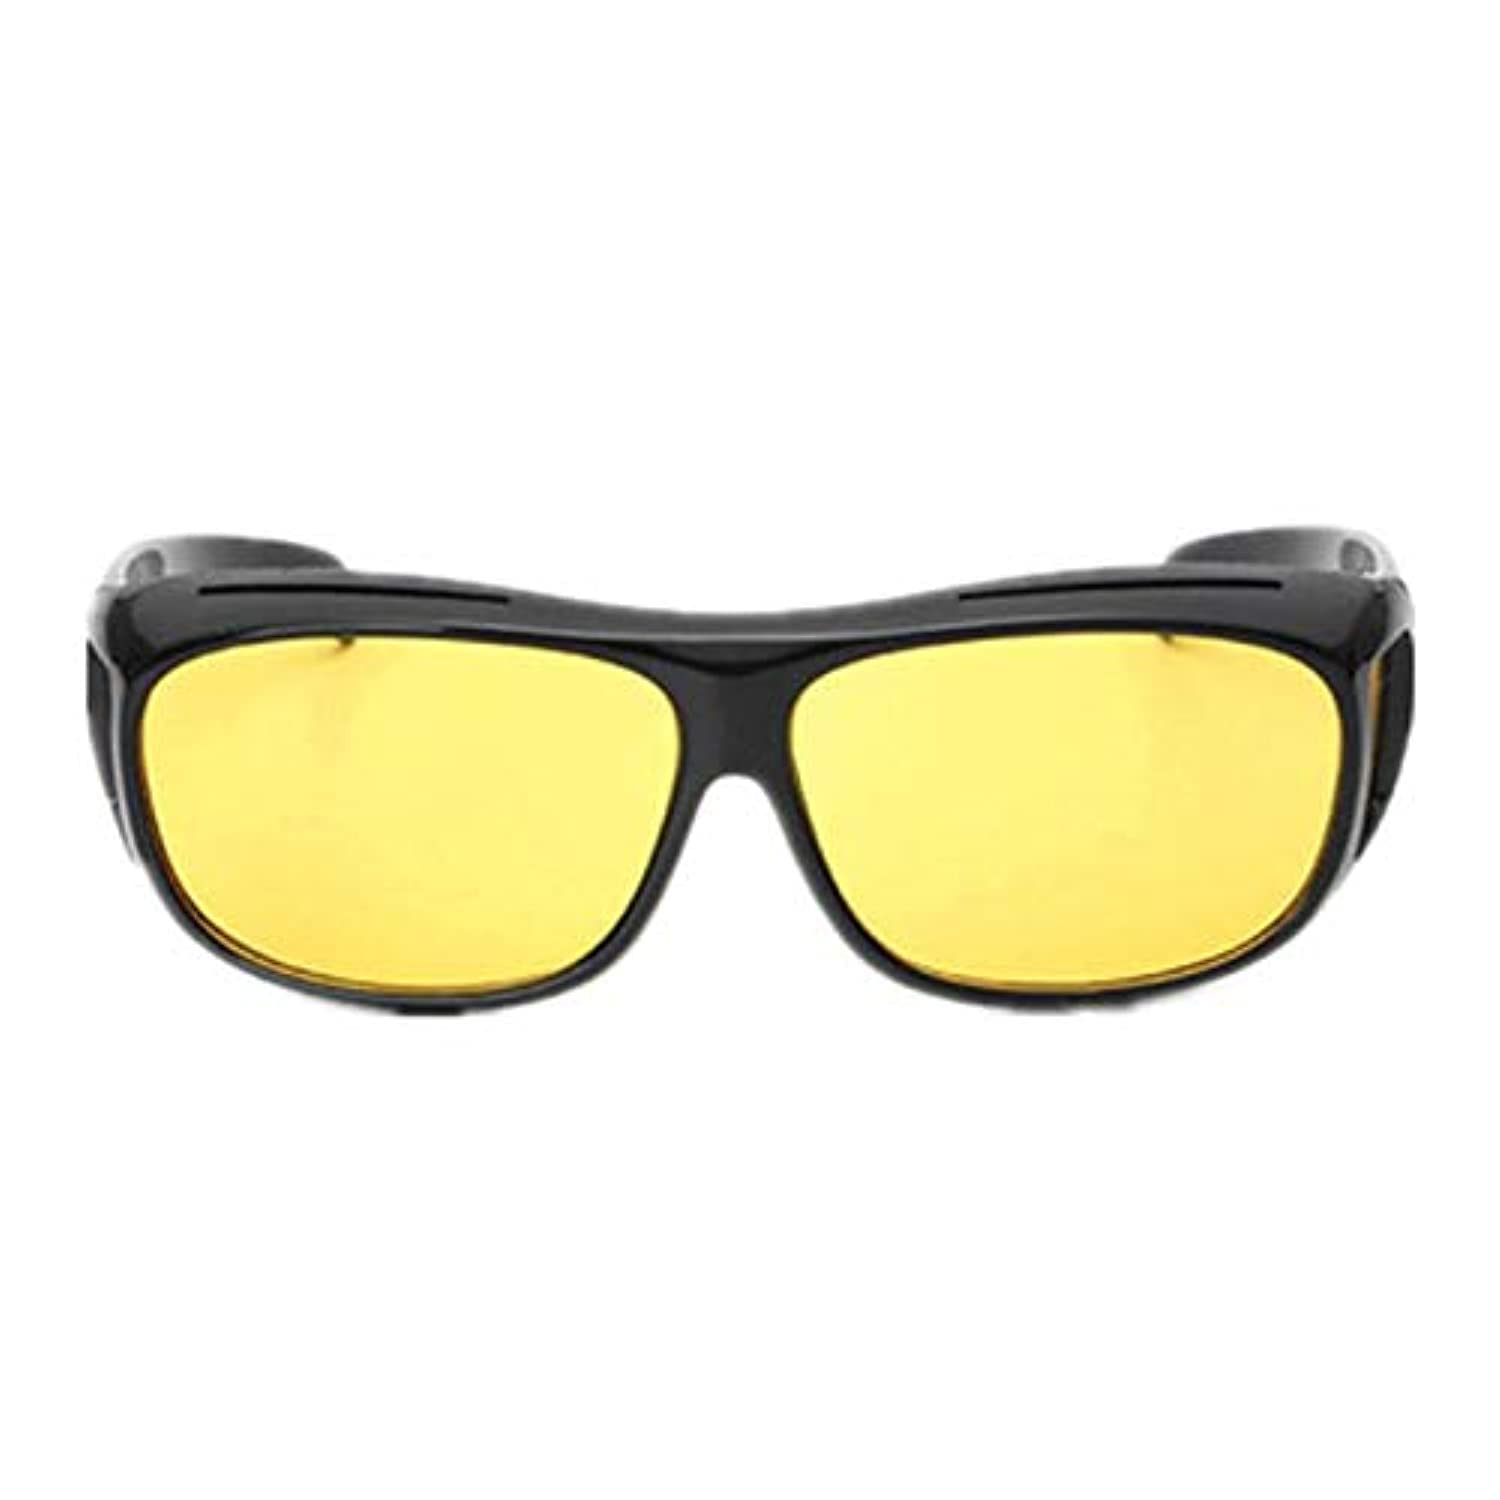 نظارات شمسية عالية الدقة مضادة للوهج - عدسات مستقطبة نحاسية وصفراء ملونة للقيادة الليلية مع حامل مشبك للسيارة - نايت فيزور